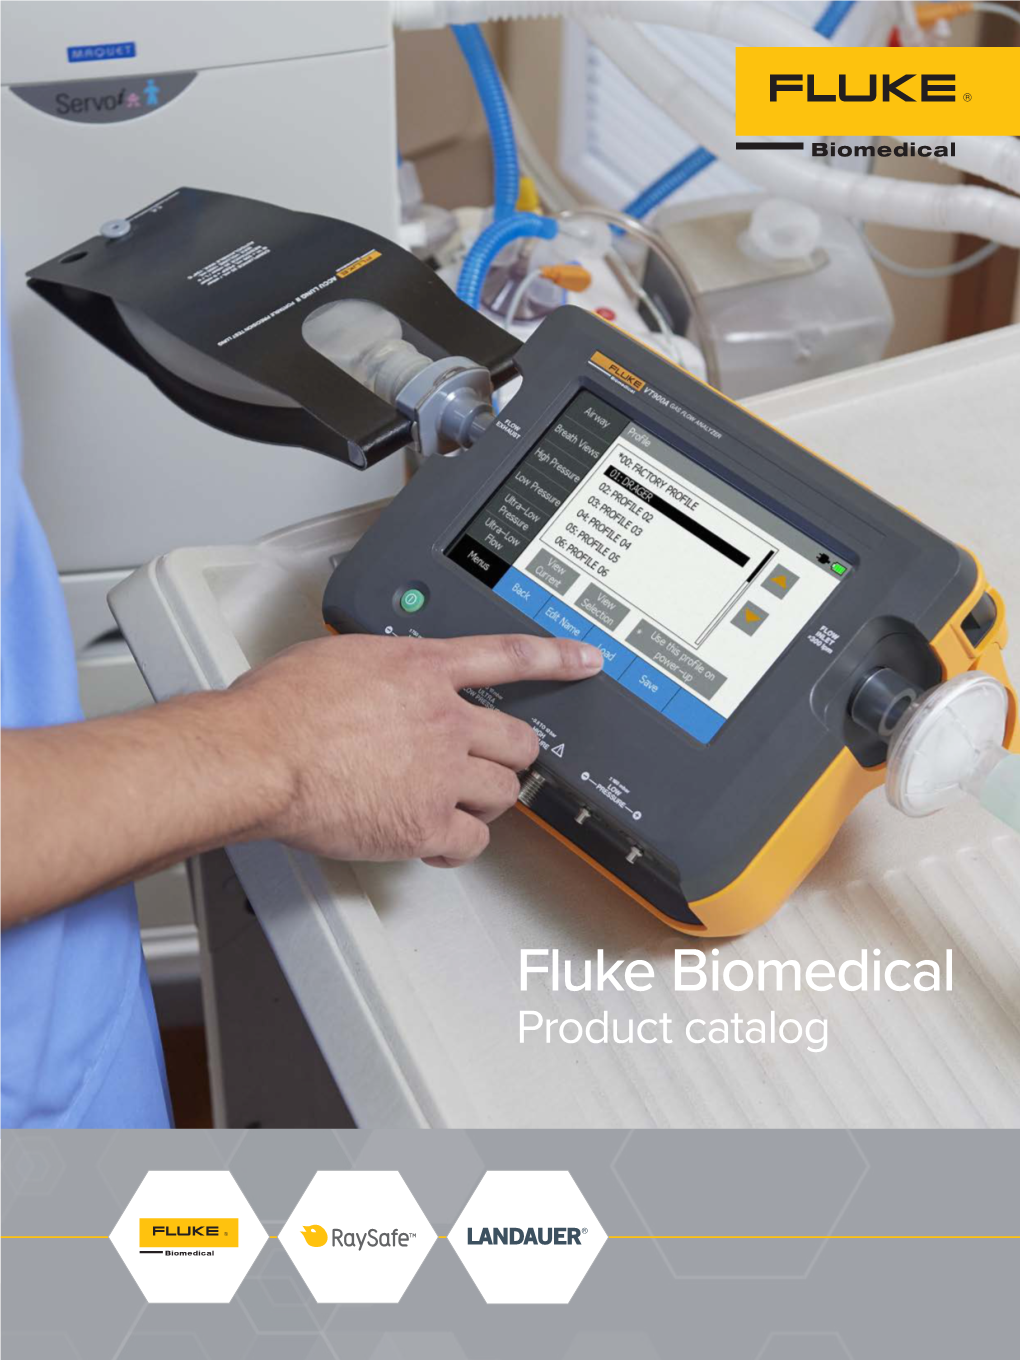 Fluke Biomedical Product Catalog